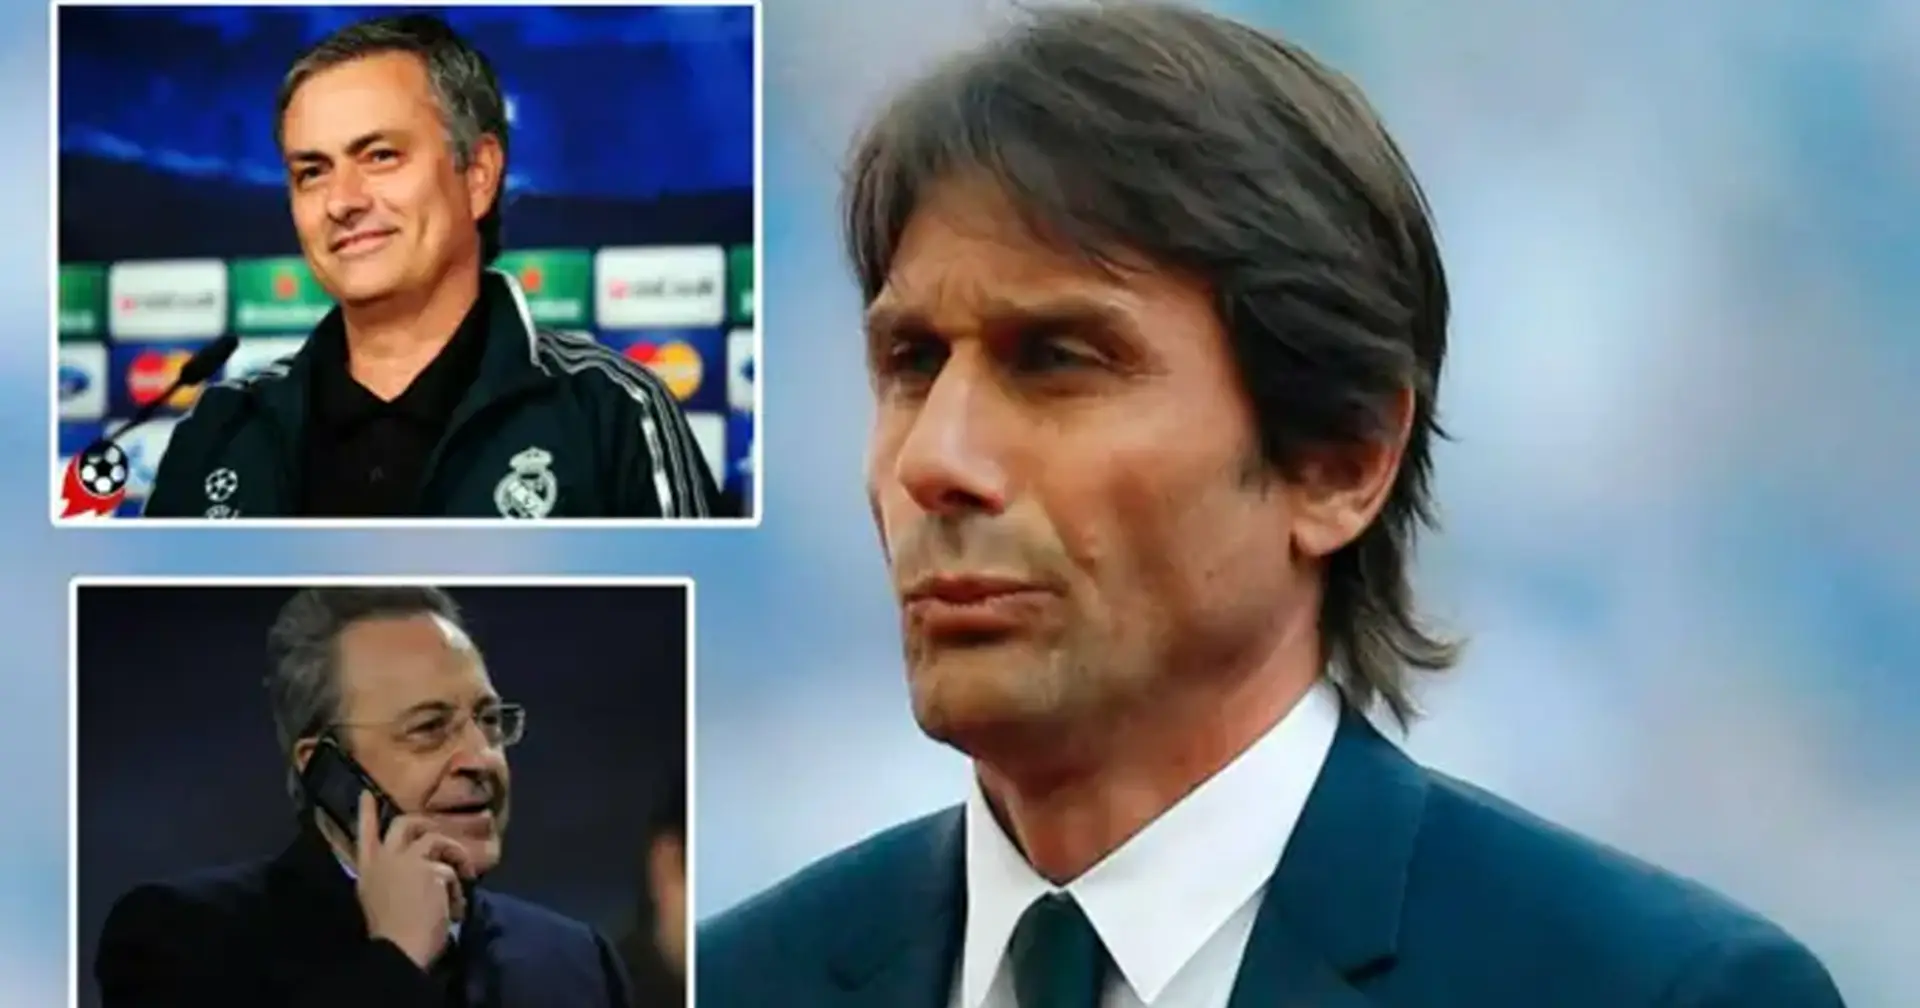 Un fan del Real Madrid menciona 3 razones por las que se debería contratar a Conte como próximo entrenador